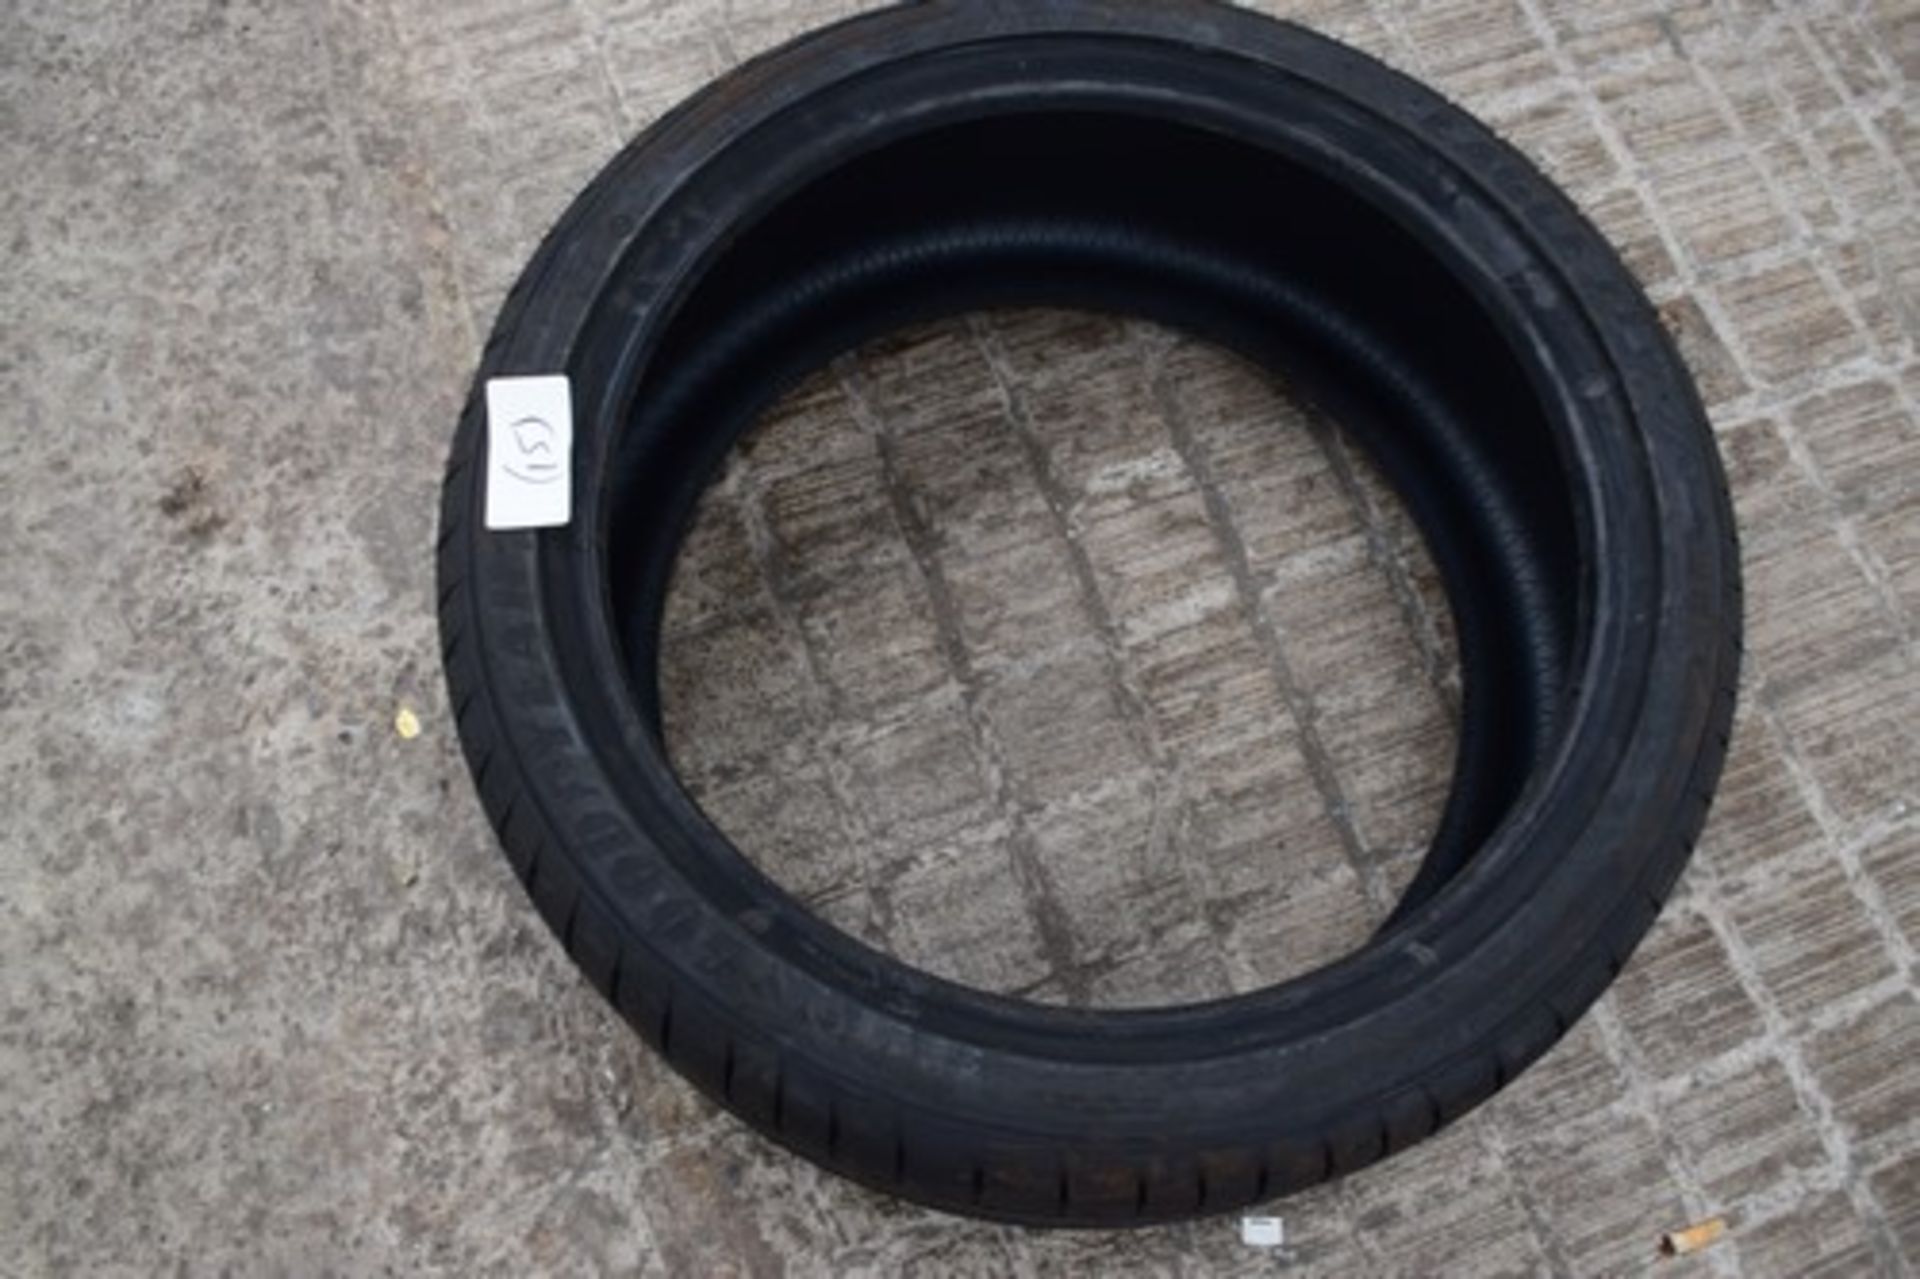 1 x Goodyear Eagle F1 Run Flat tyre, size 255/35R19 92Y - new (C2)(15)